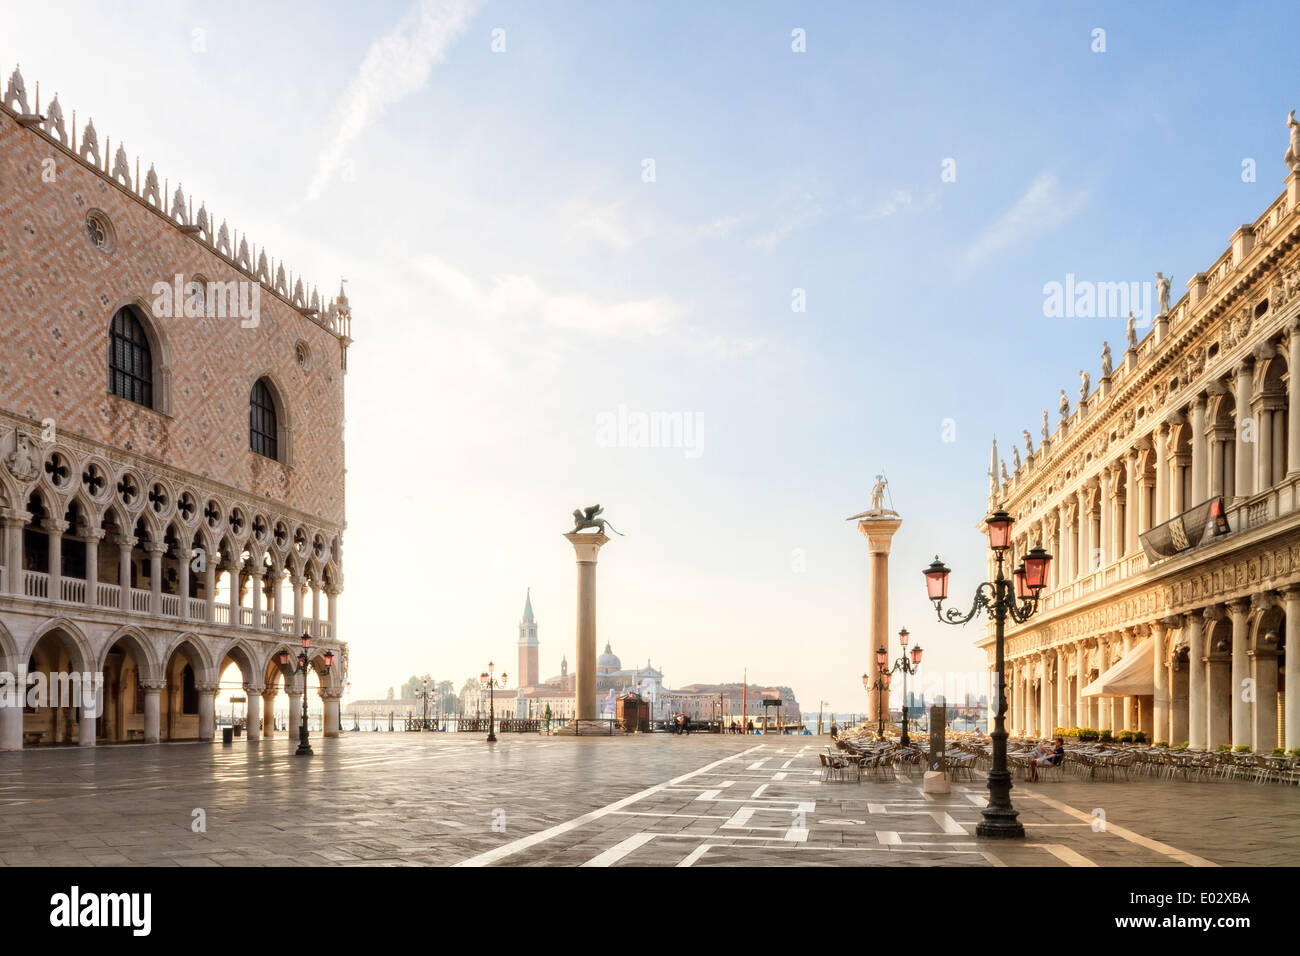 La Piazza San Marco. Imagen de la impresionante plaza histórica de San Marcos en la ciudad de la laguna de Venecia, en Italia, piedra Foto de stock